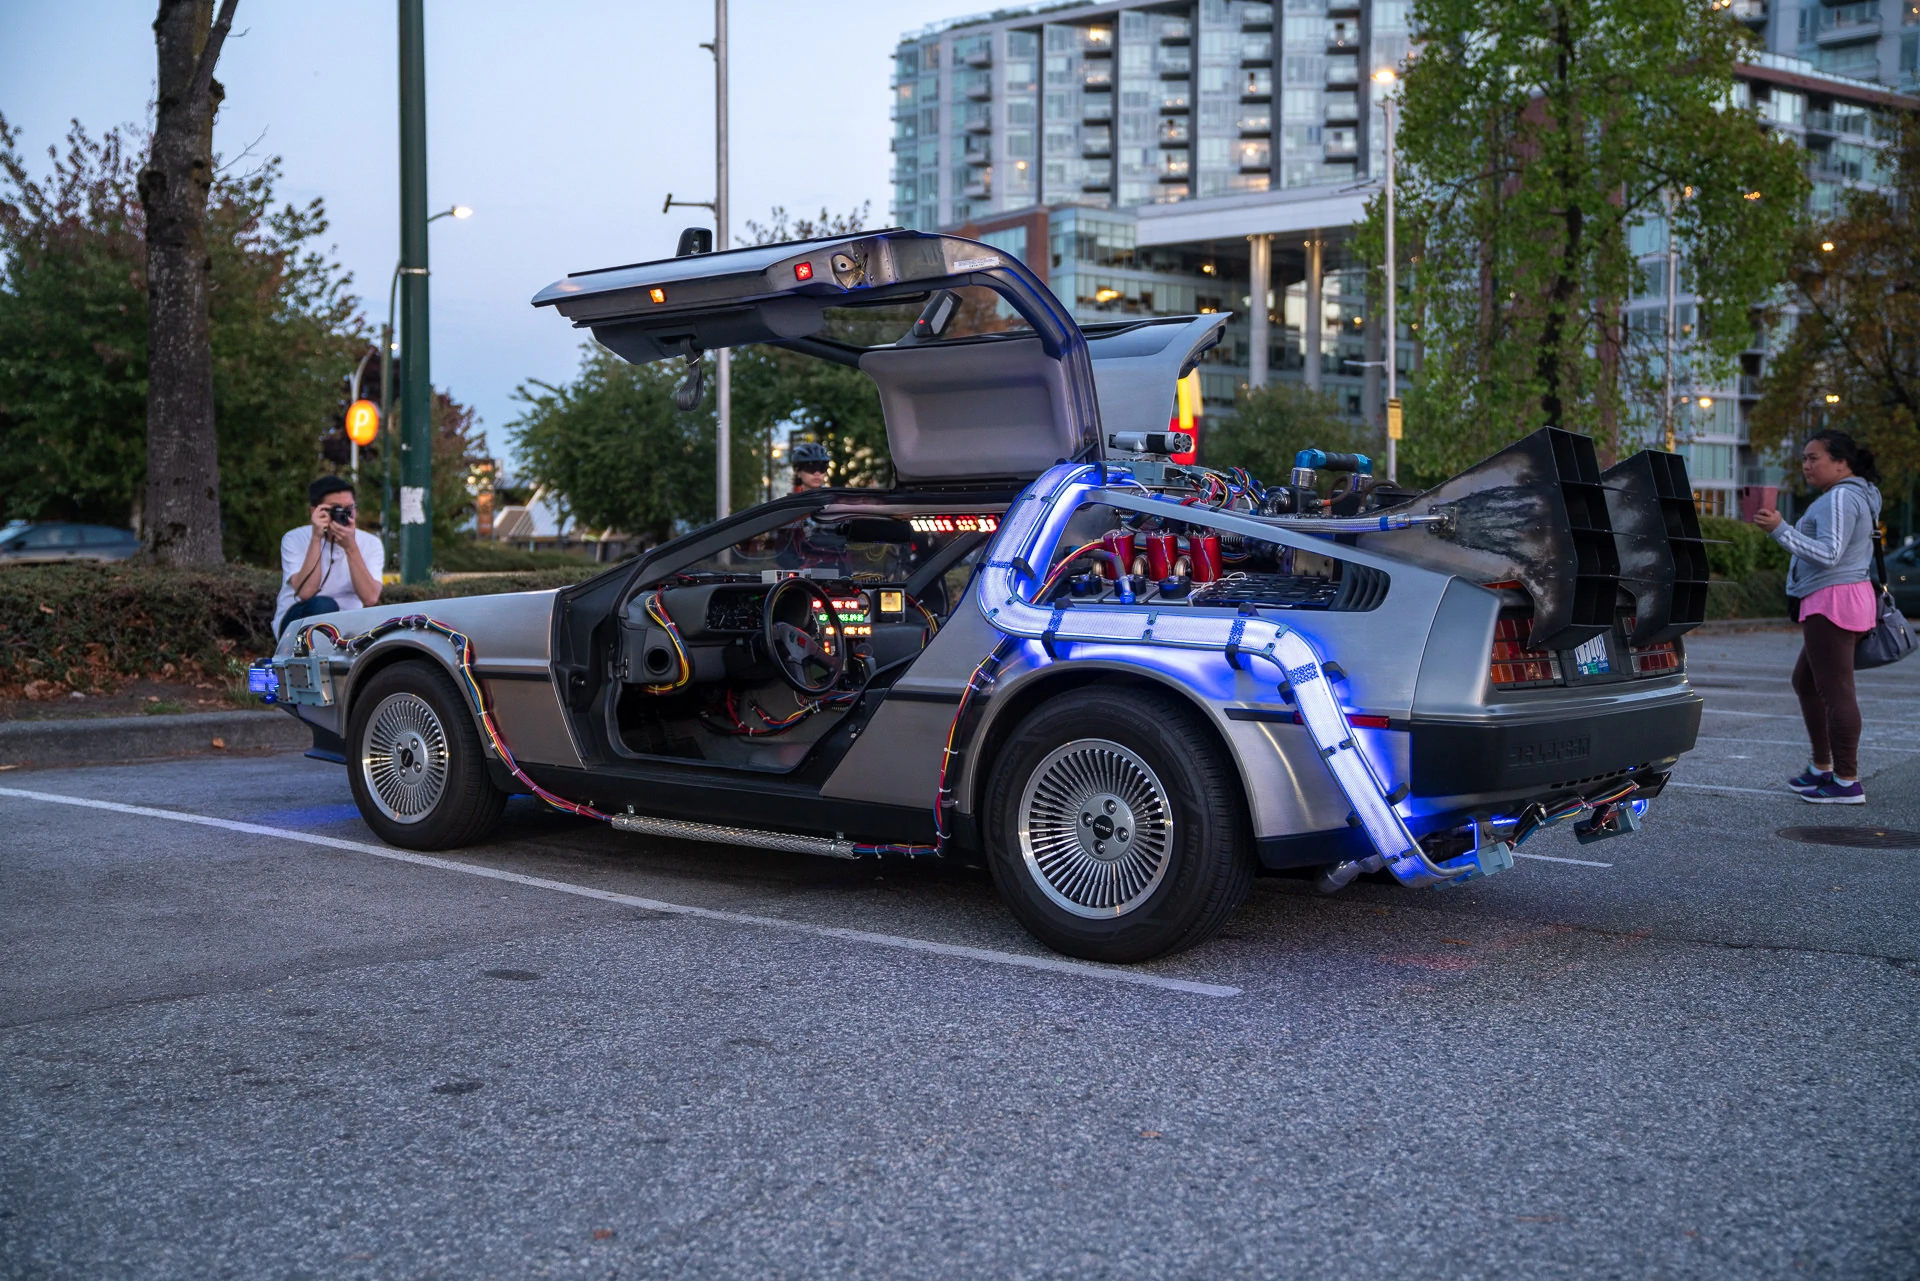 DeLorean 'Time Machine' replica near 'Science World', Vancouver, BC.